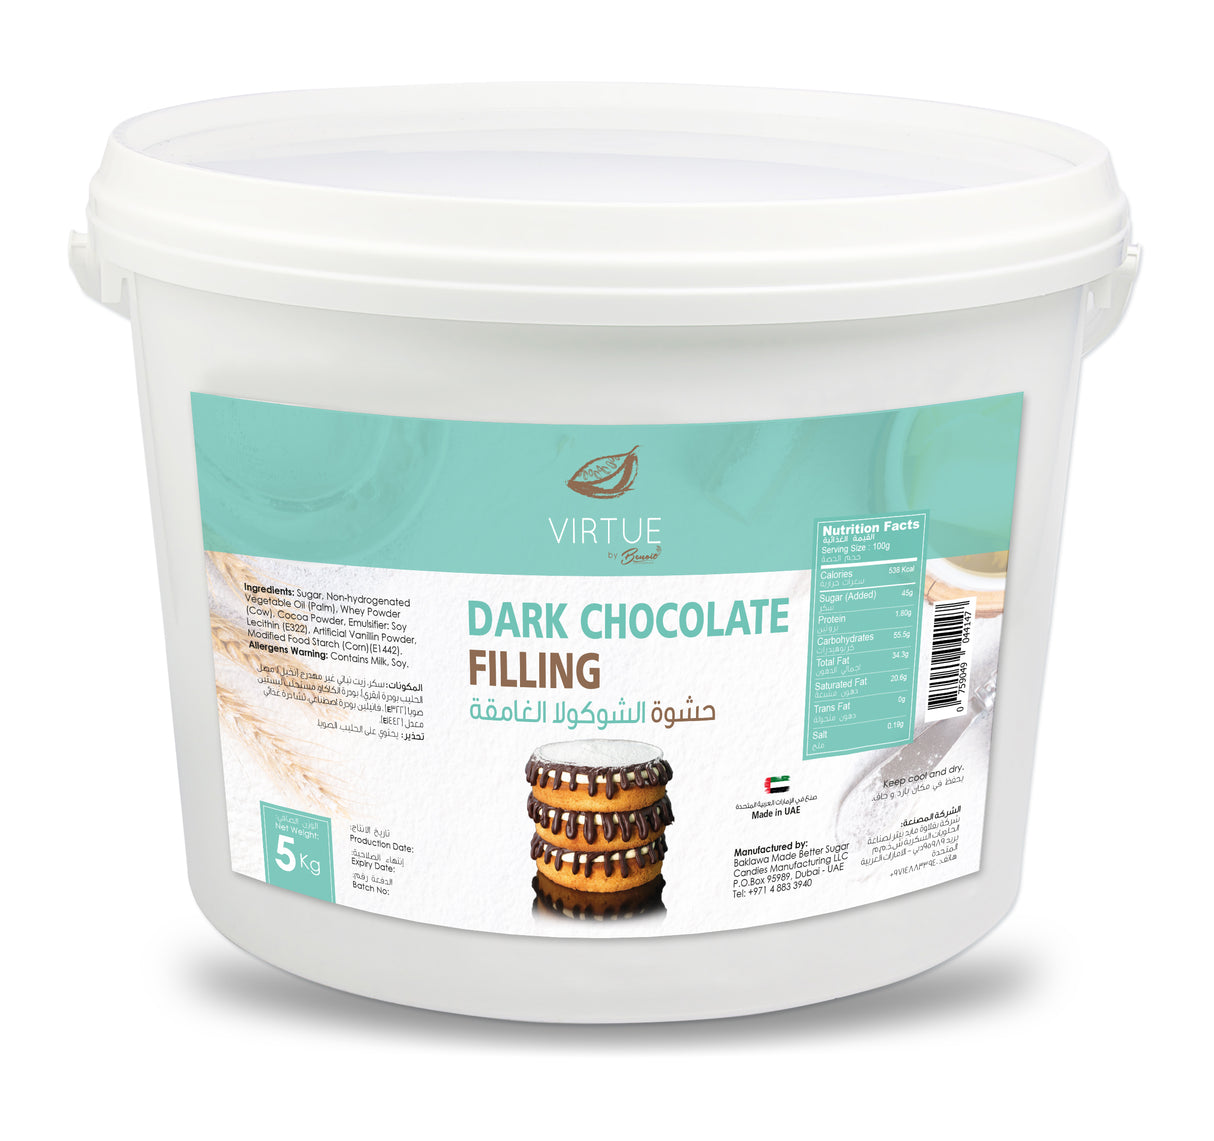 VIRTUE-DARK CHOCOLATE FILLING (BUCKET OF 5 KG)